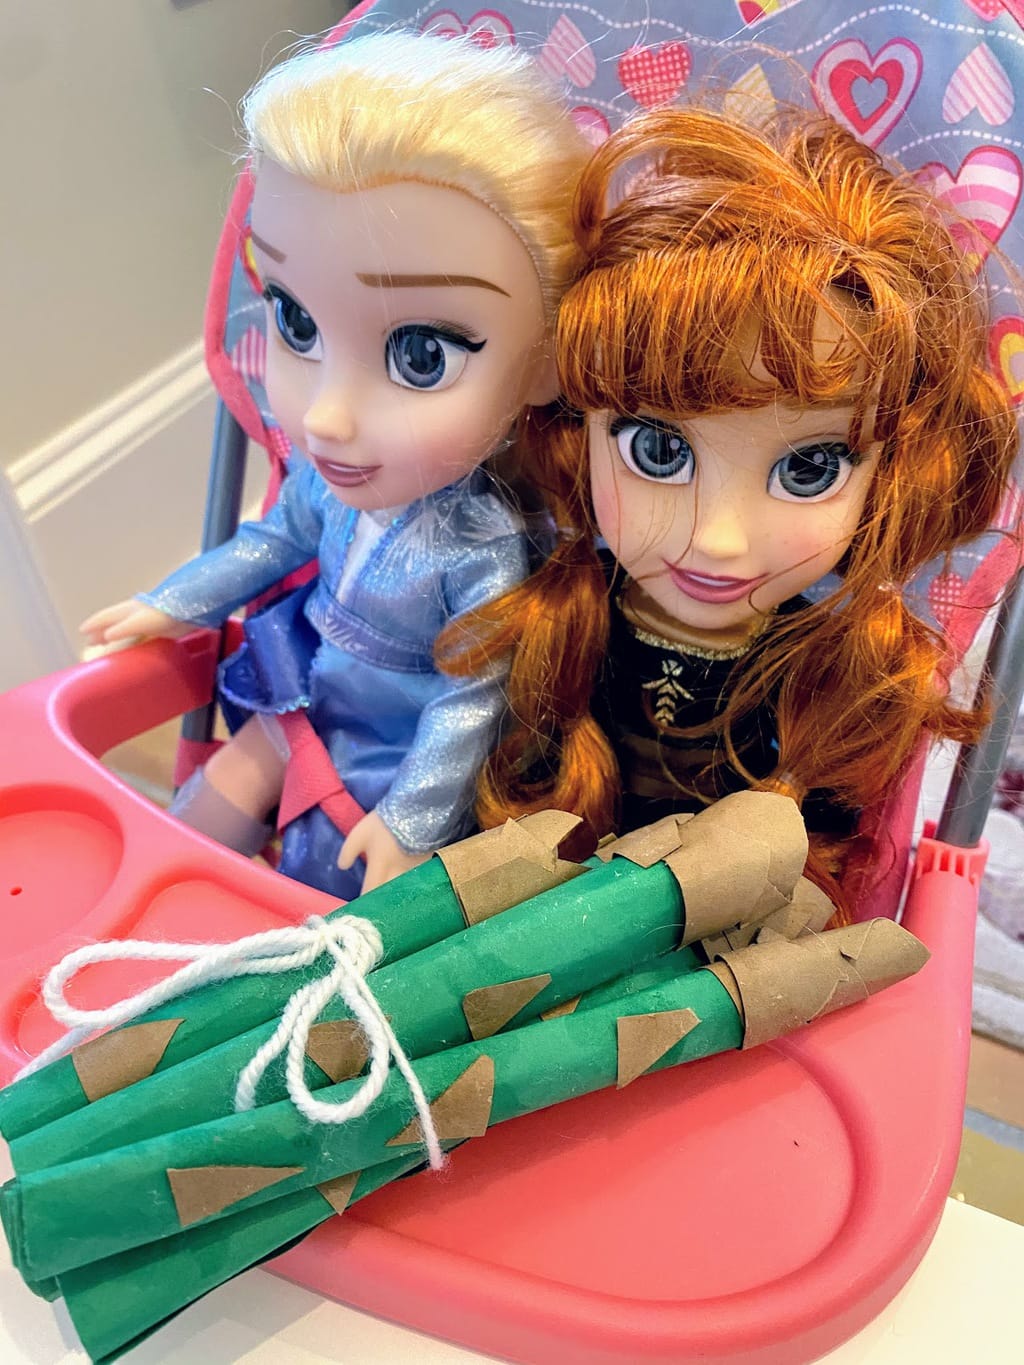 dolls with asparagus